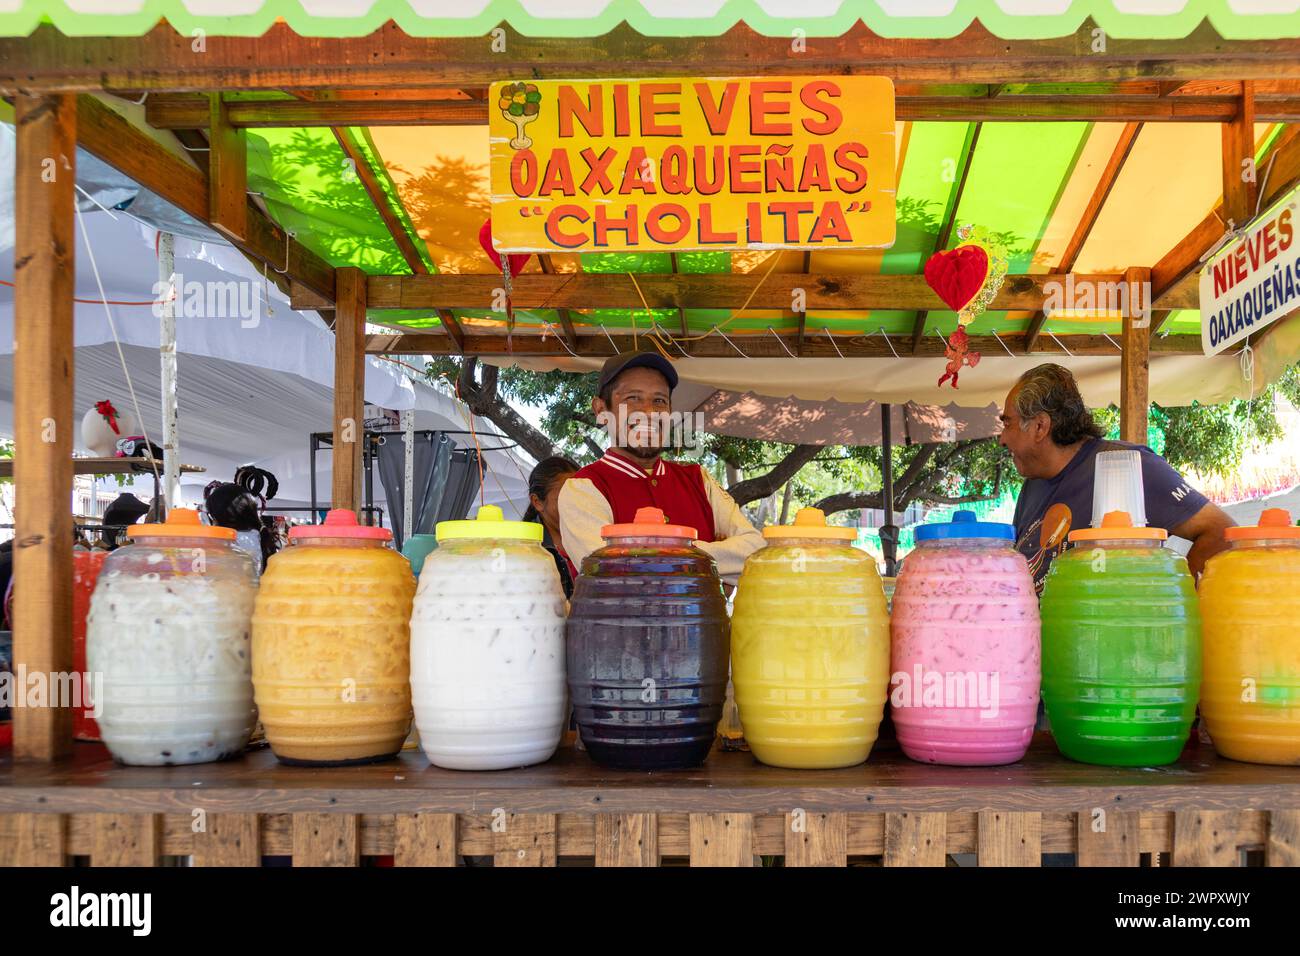 Oaxaca, Messico - Un chiosco in una strada trafficata vende bevande fredde aromatizzate. Foto Stock